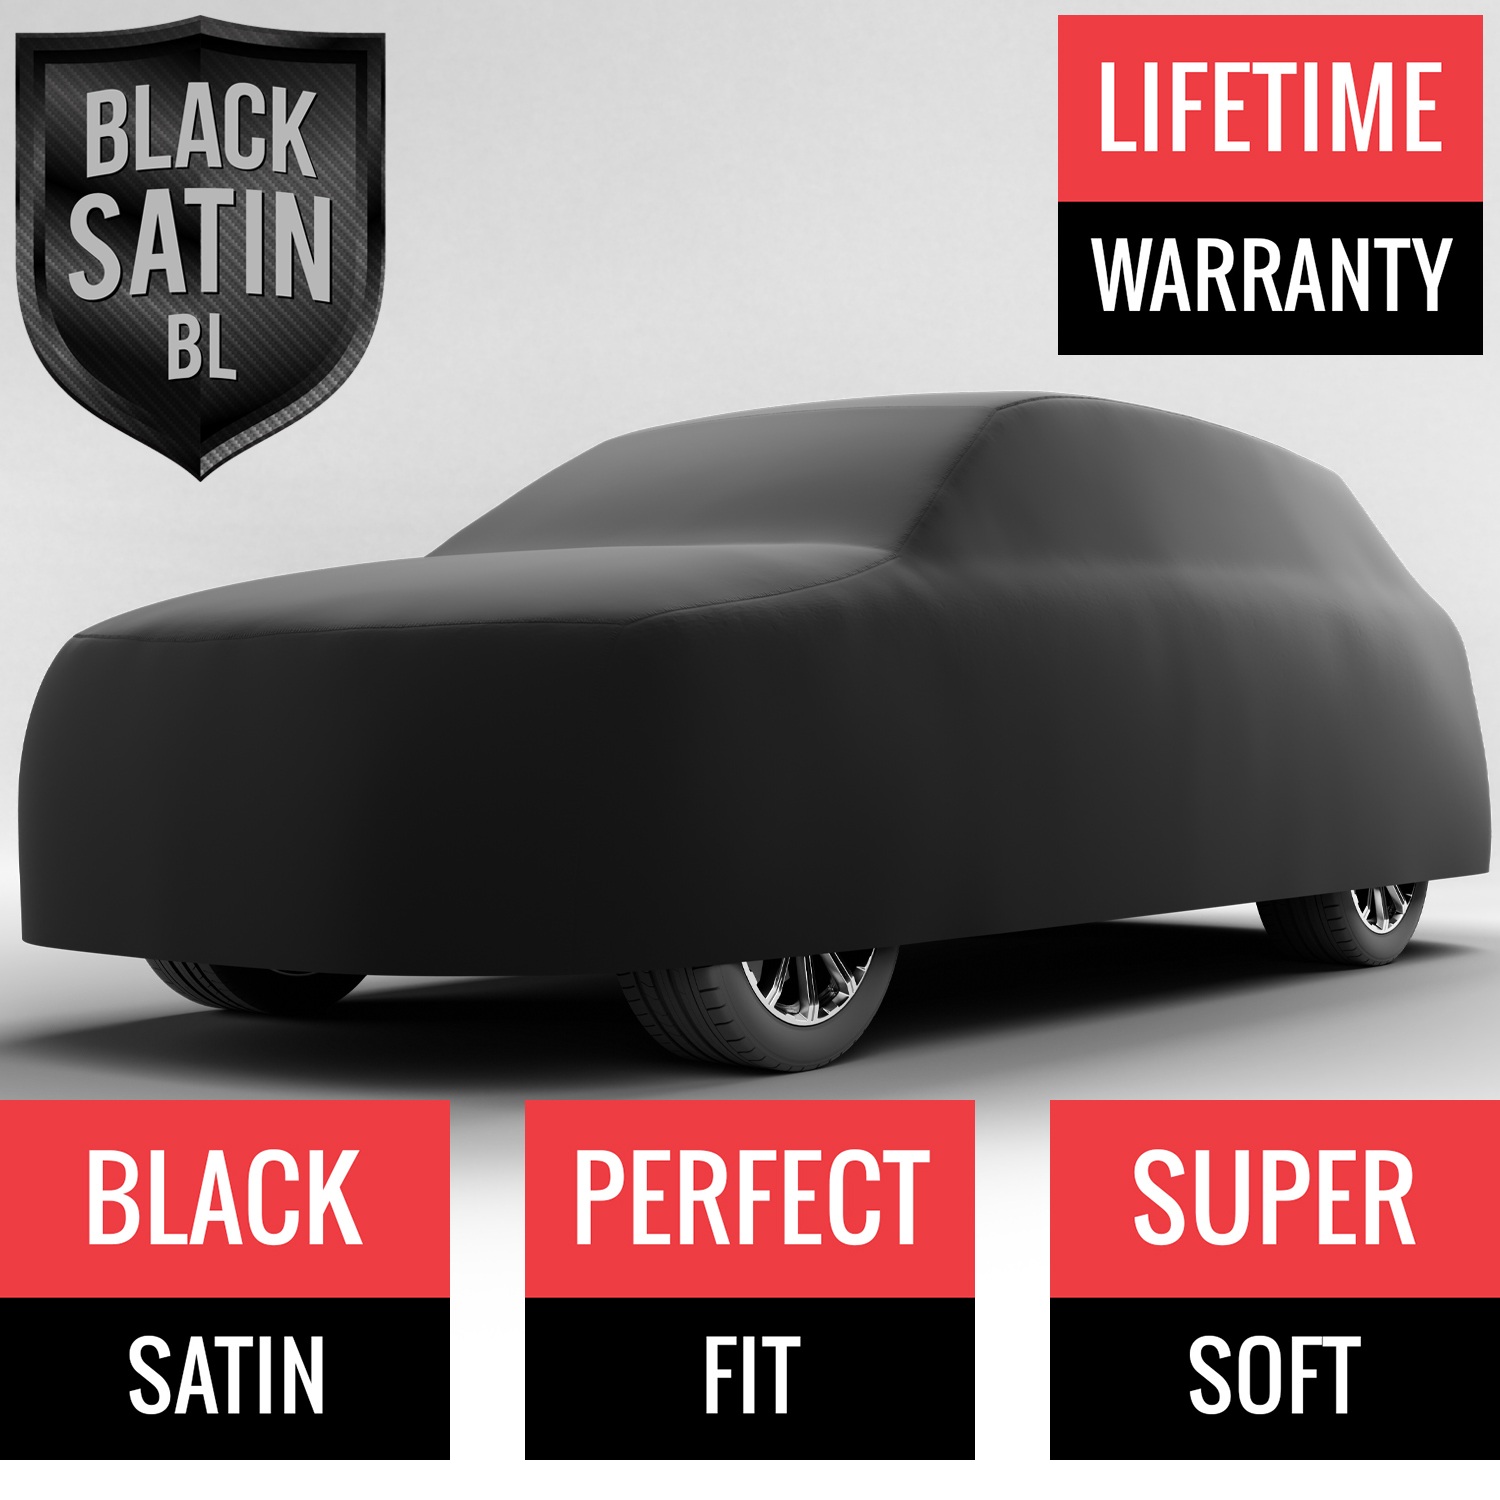 Black Satin BL - Black Car Cover for Bentley Bentayga 2018 SUV 4-Door